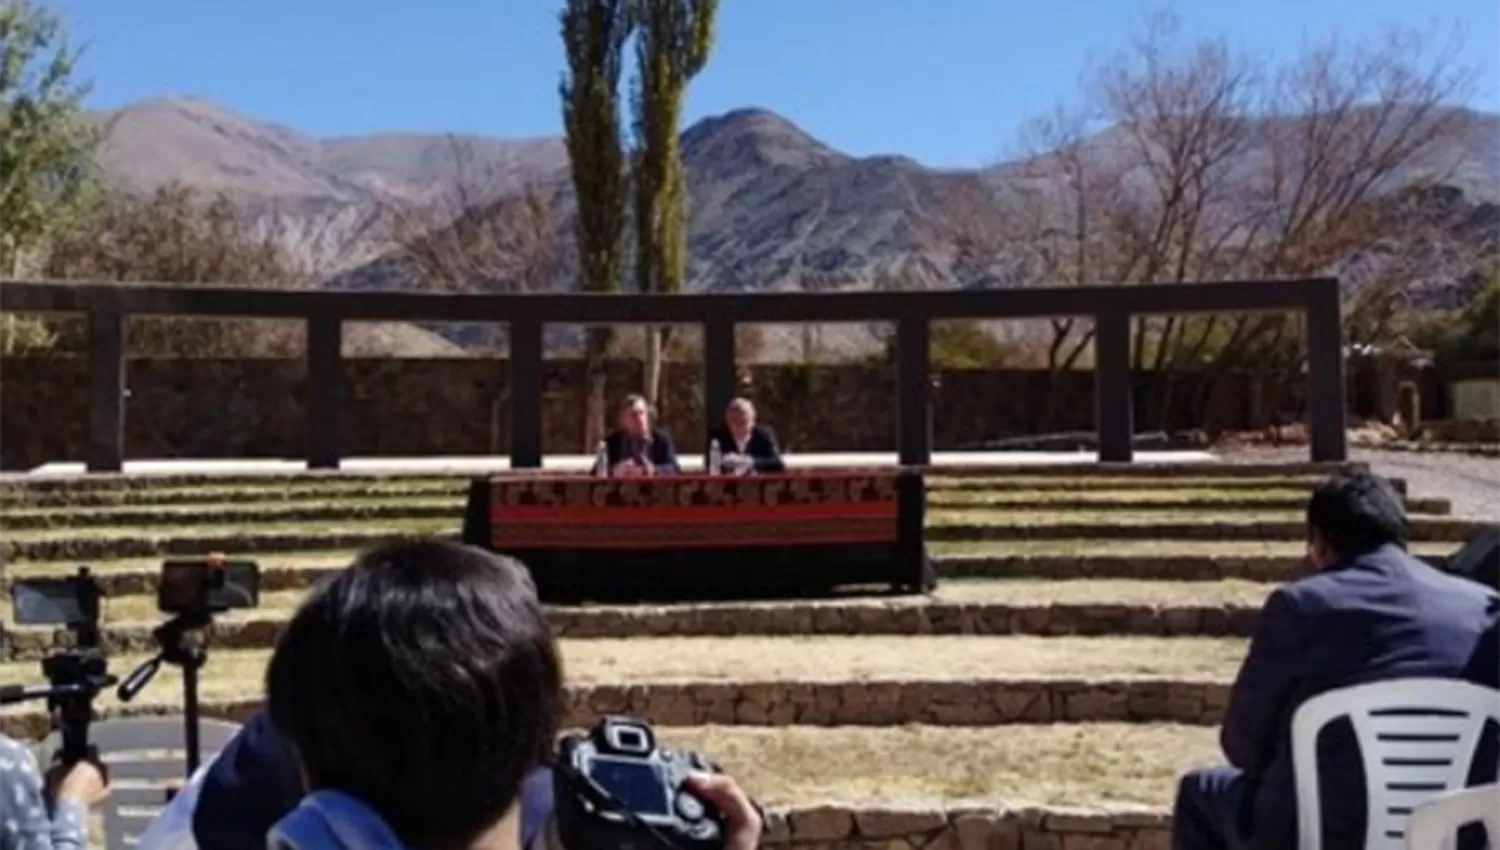 El presidente Macri dio una rueda de prensa junto al gobernador jujeño Gerardo Morales